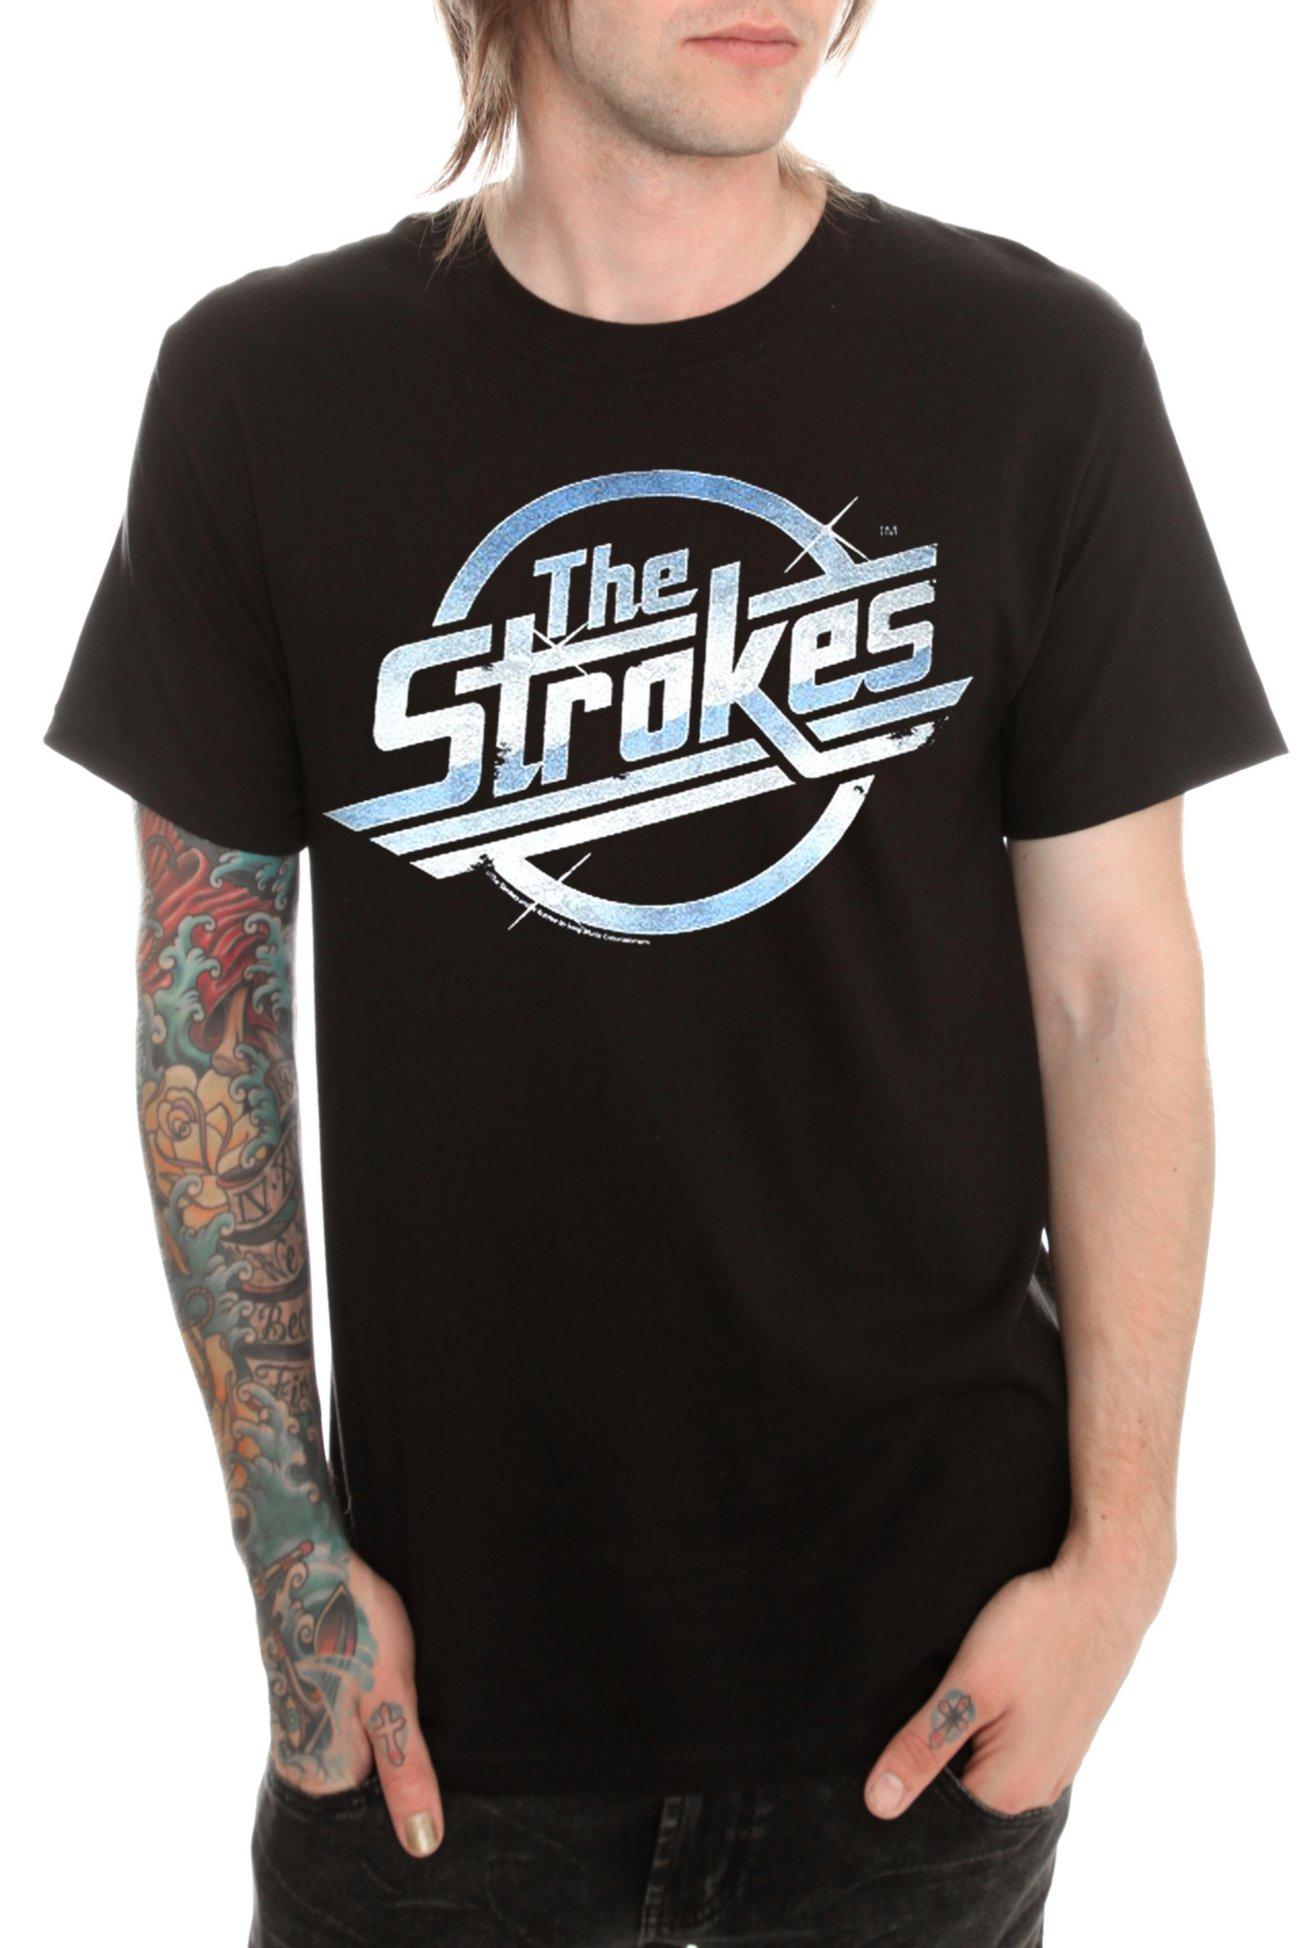 Spanks logo - Tattoo - T-Shirt